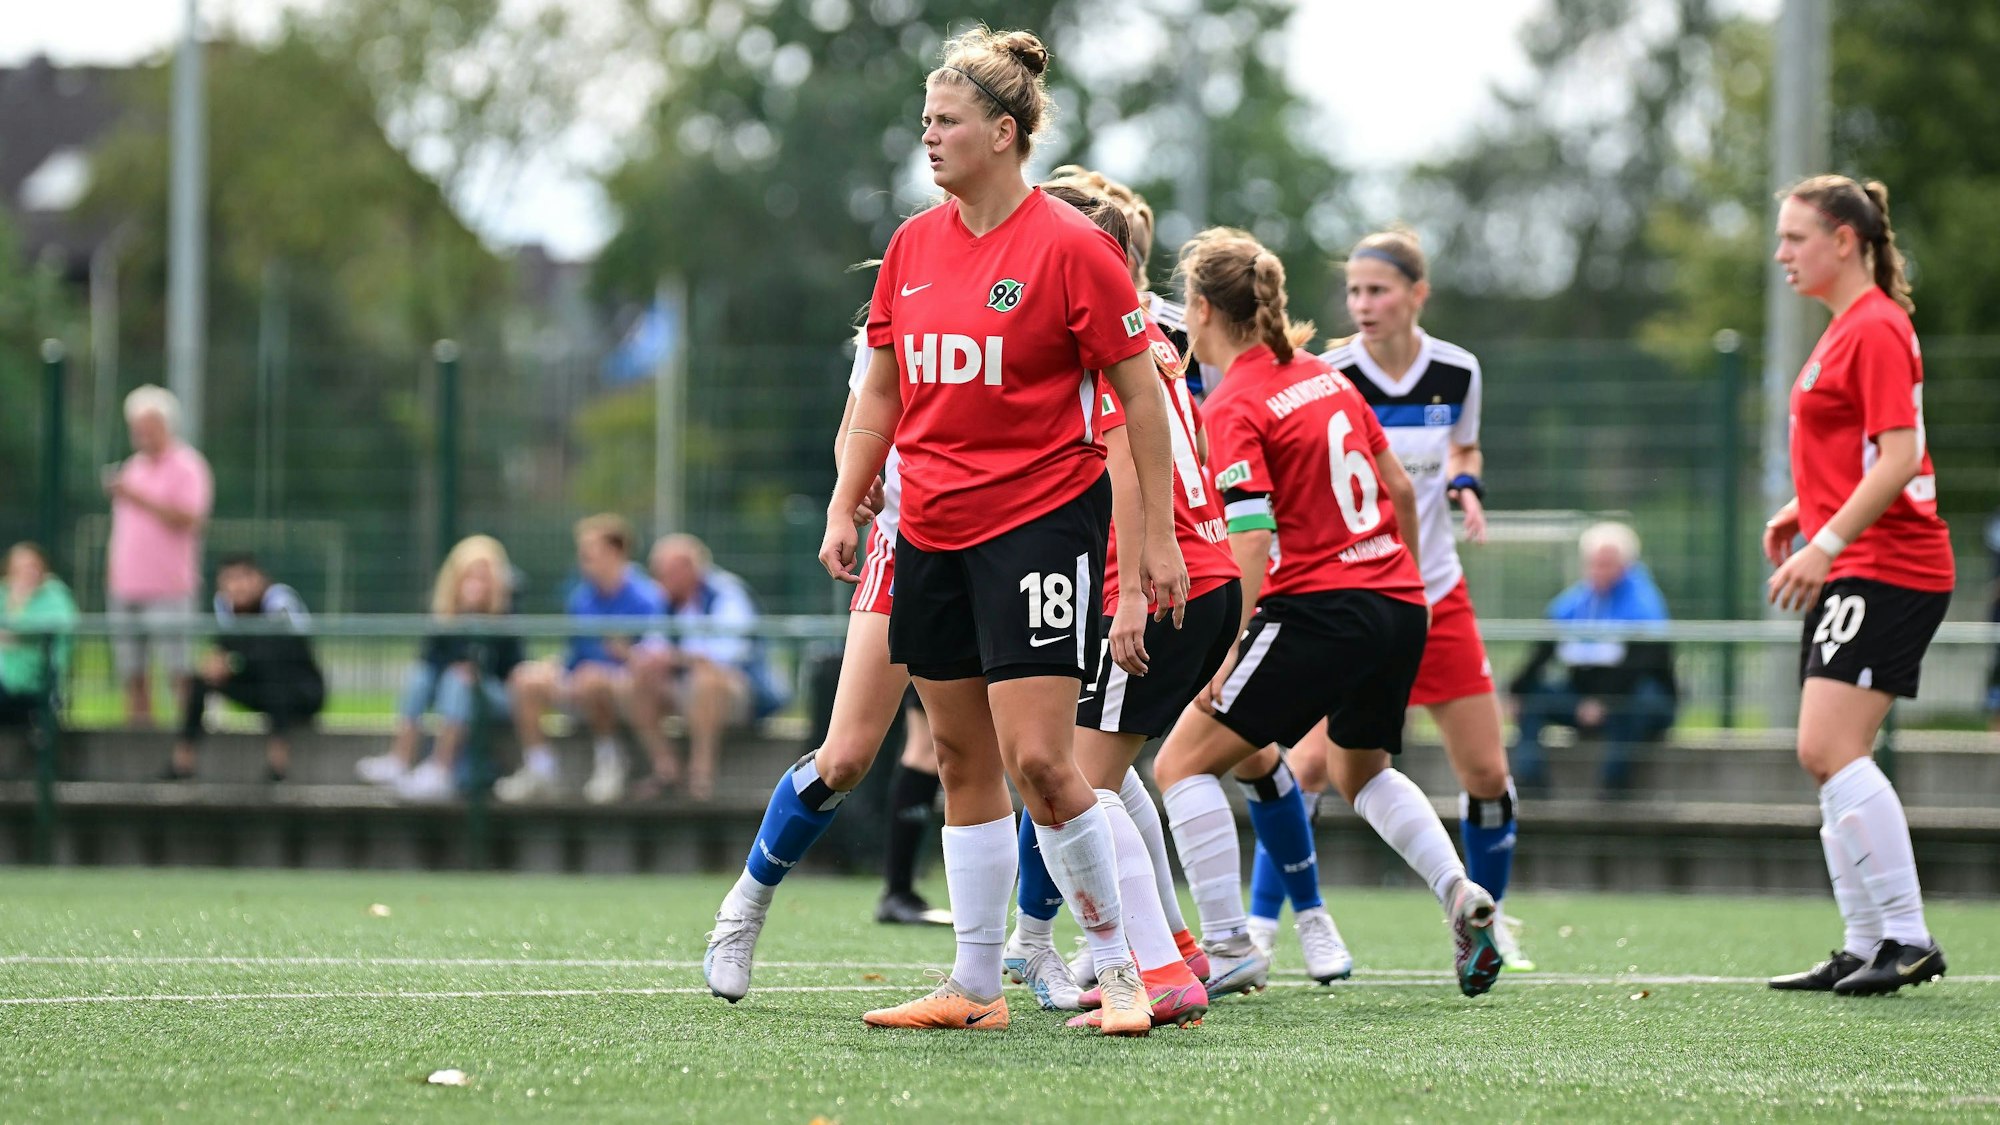 Anna-Lena Füllkrug steht im Spiel der Frauen-Regionalliga gegen den Hamburger SV II auf dem Feld.